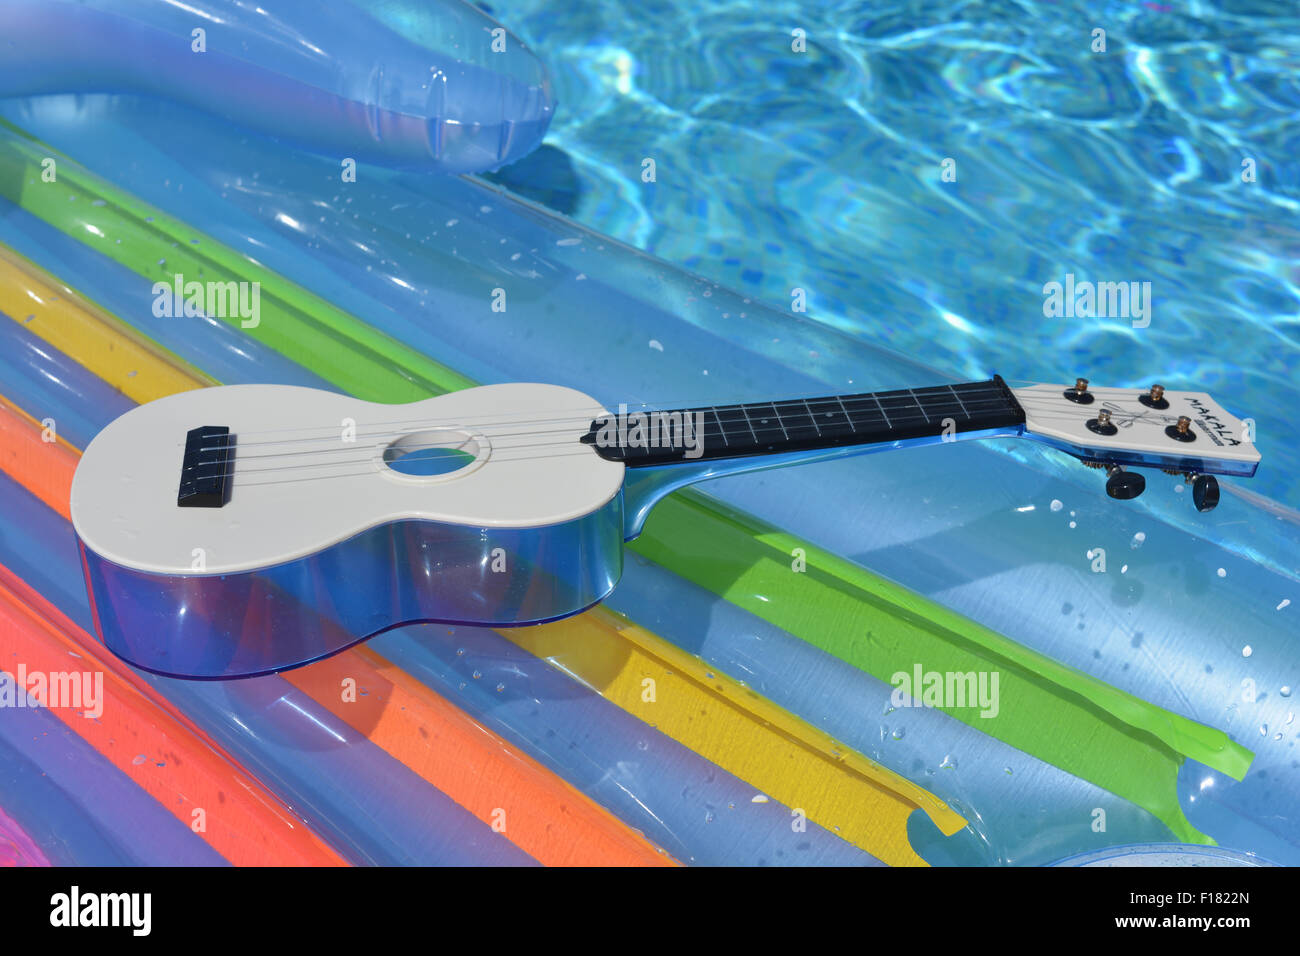 Makala waterman ukulele hi-res stock photography and images - Alamy